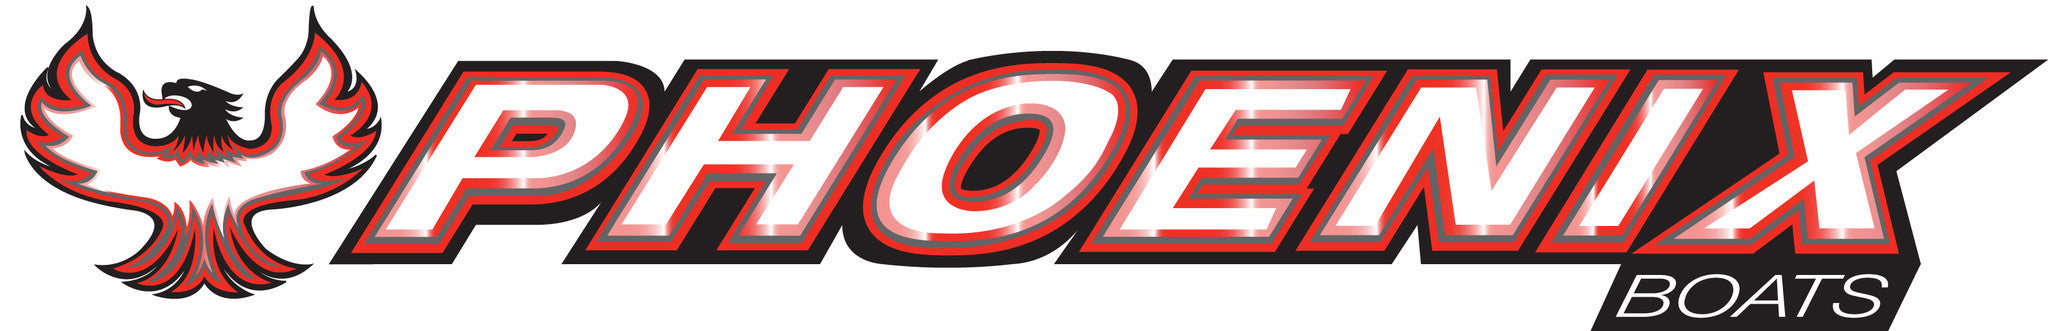 skeeter logo image